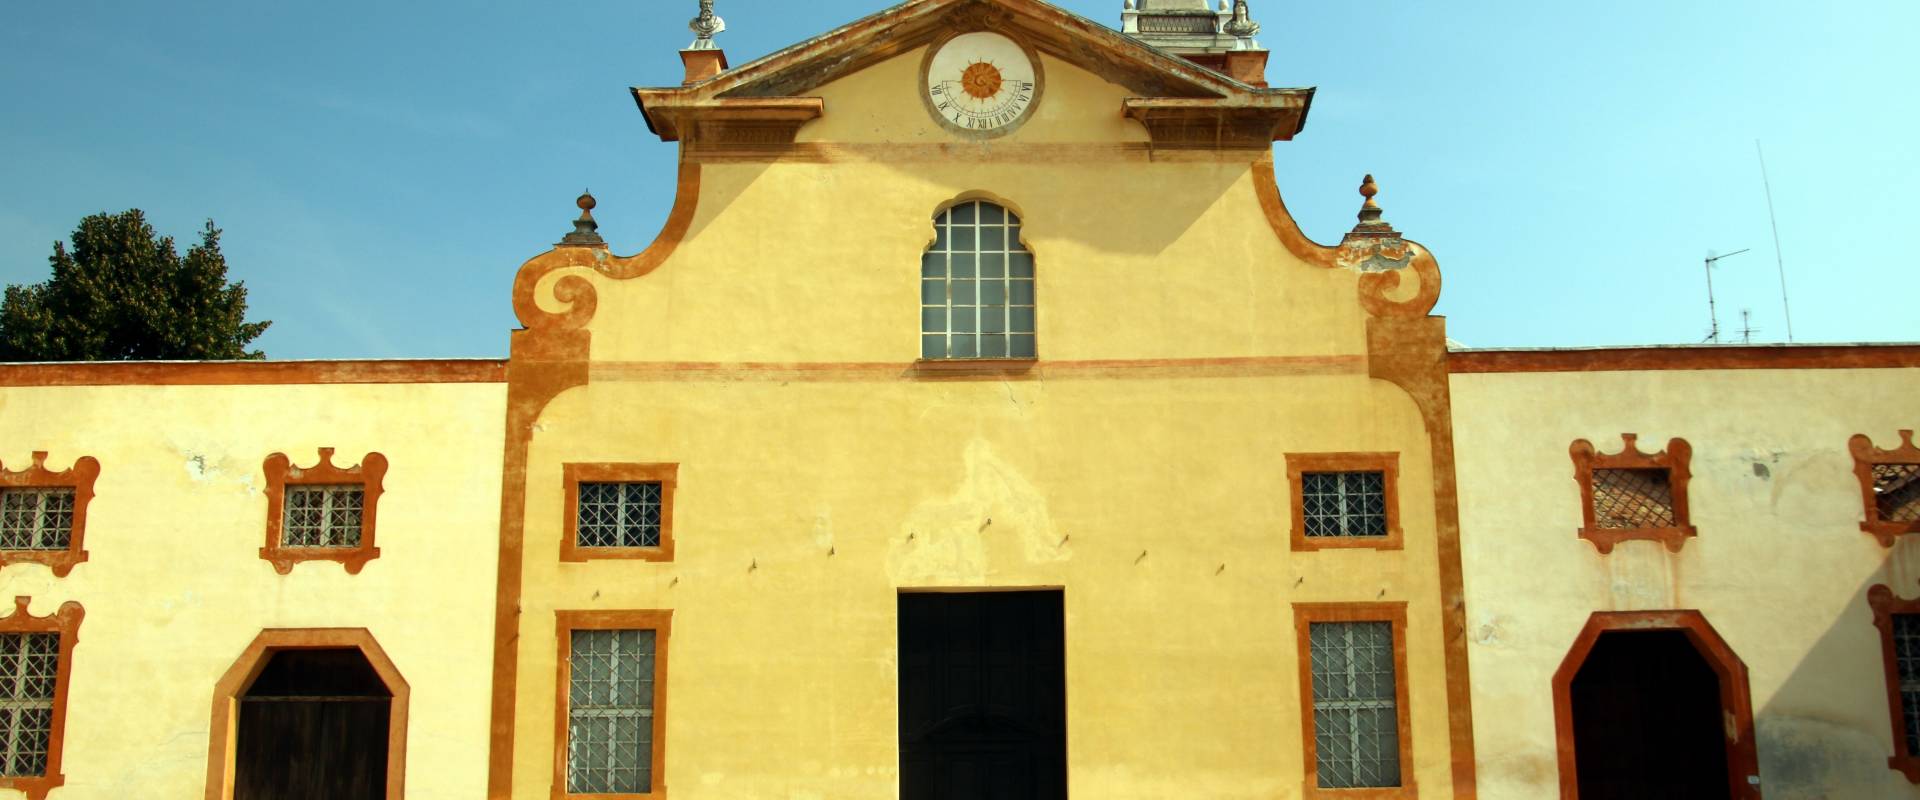 Chiesa di San Francesco (Palazzo Ducale, Sassuolo), esterno 05 foto di Mongolo1984